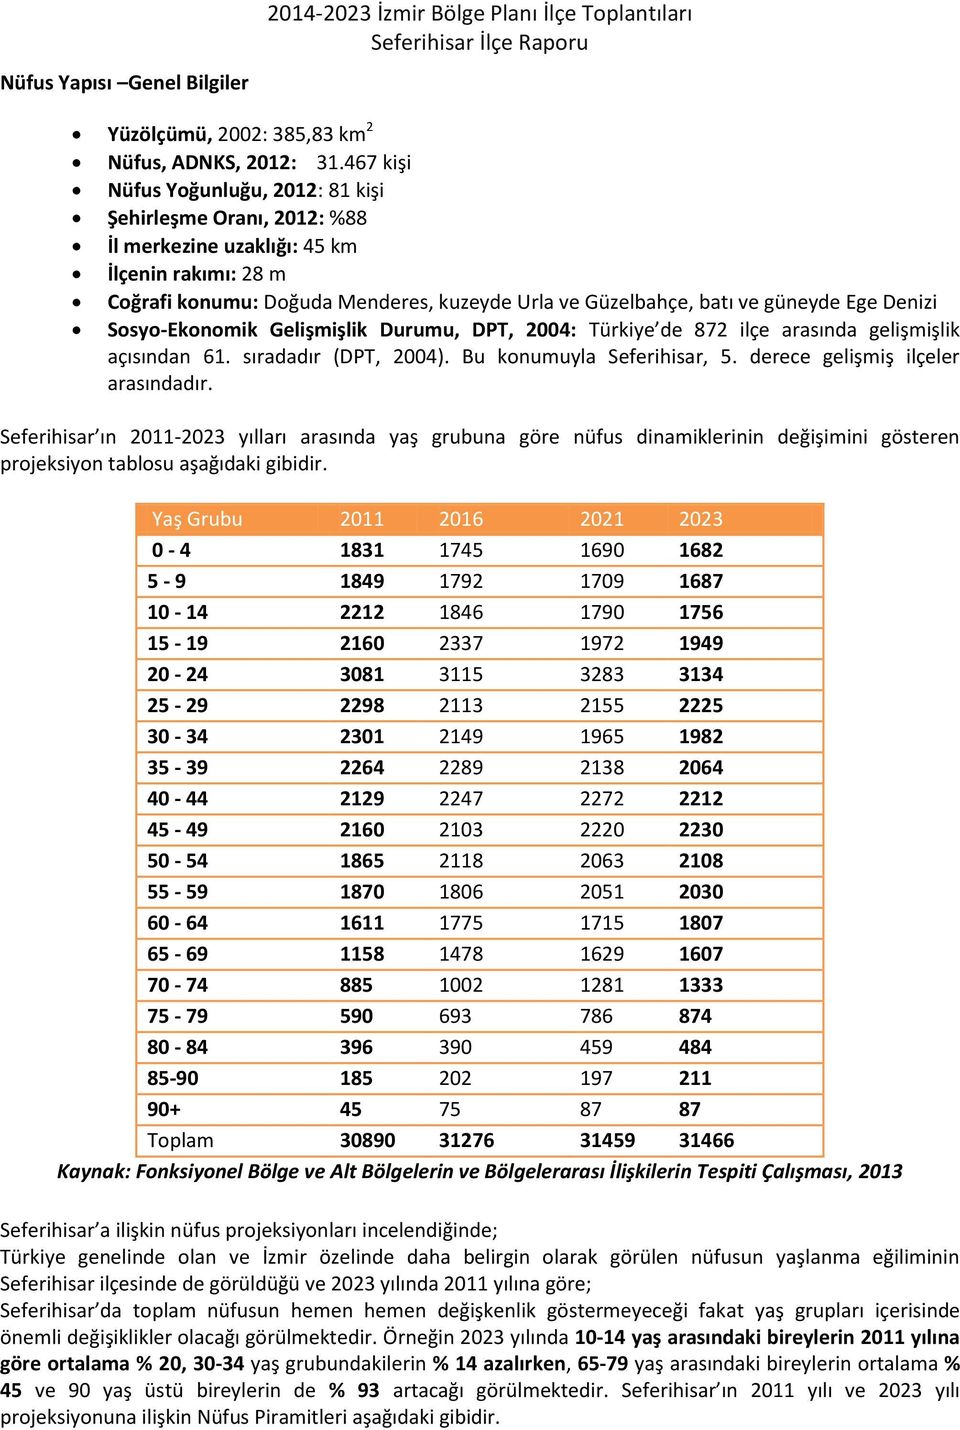 Denizi Sosyo-Ekonomik Gelişmişlik Durumu, DPT, 2004: Türkiye de 872 ilçe arasında gelişmişlik açısından 61. sıradadır (DPT, 2004). Bu konumuyla Seferihisar, 5. derece gelişmiş ilçeler arasındadır.